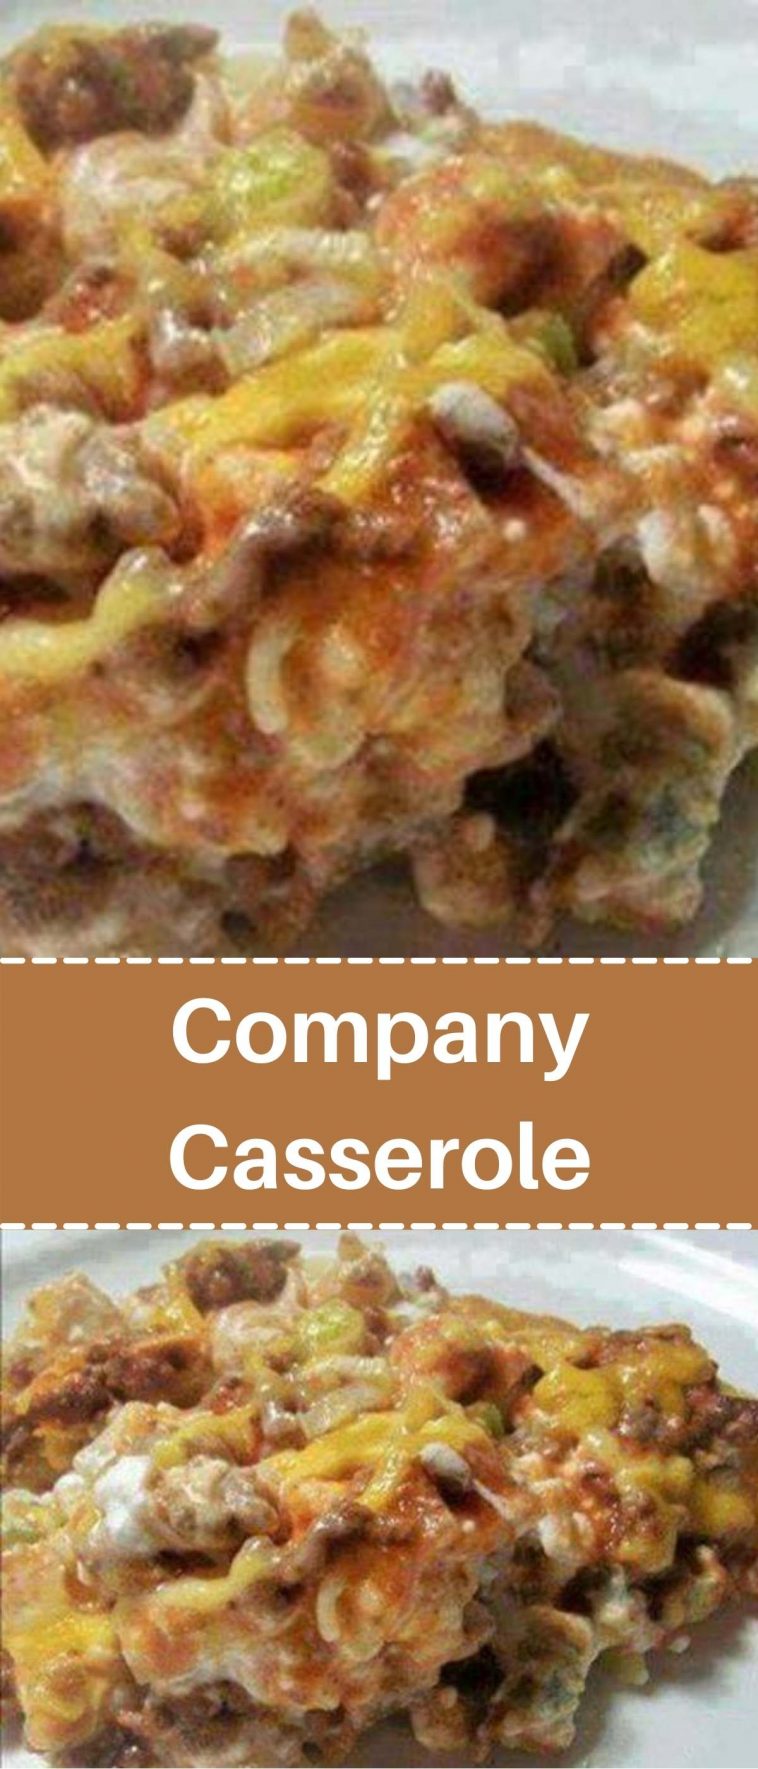 Company Casserole